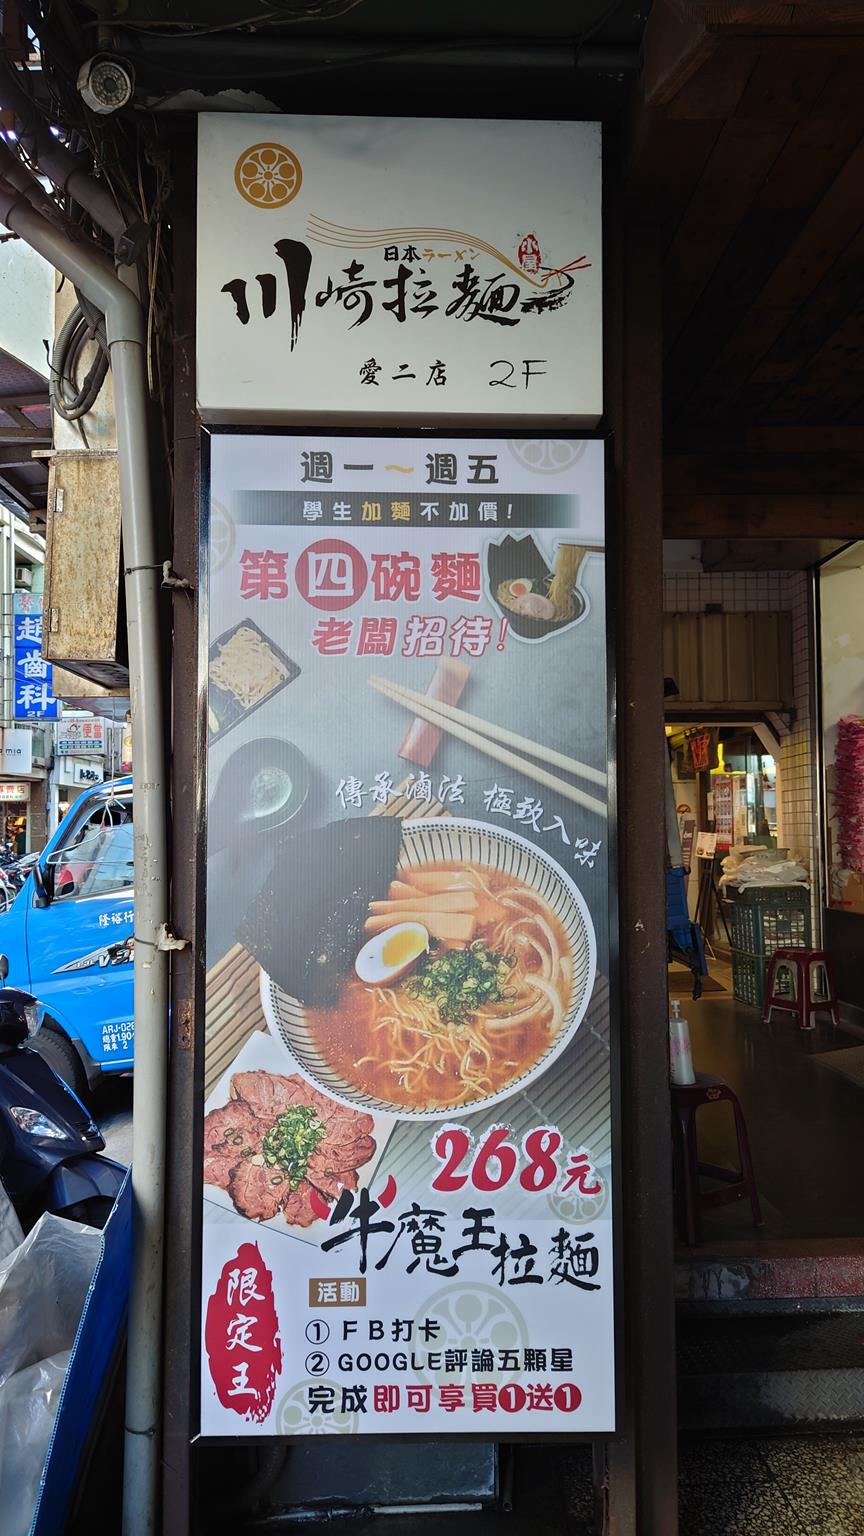 食記 川崎拉麵 有時候會想要默默地吃一份拉麵 基隆愛二店 台灣貪吃胖的玩樂故事